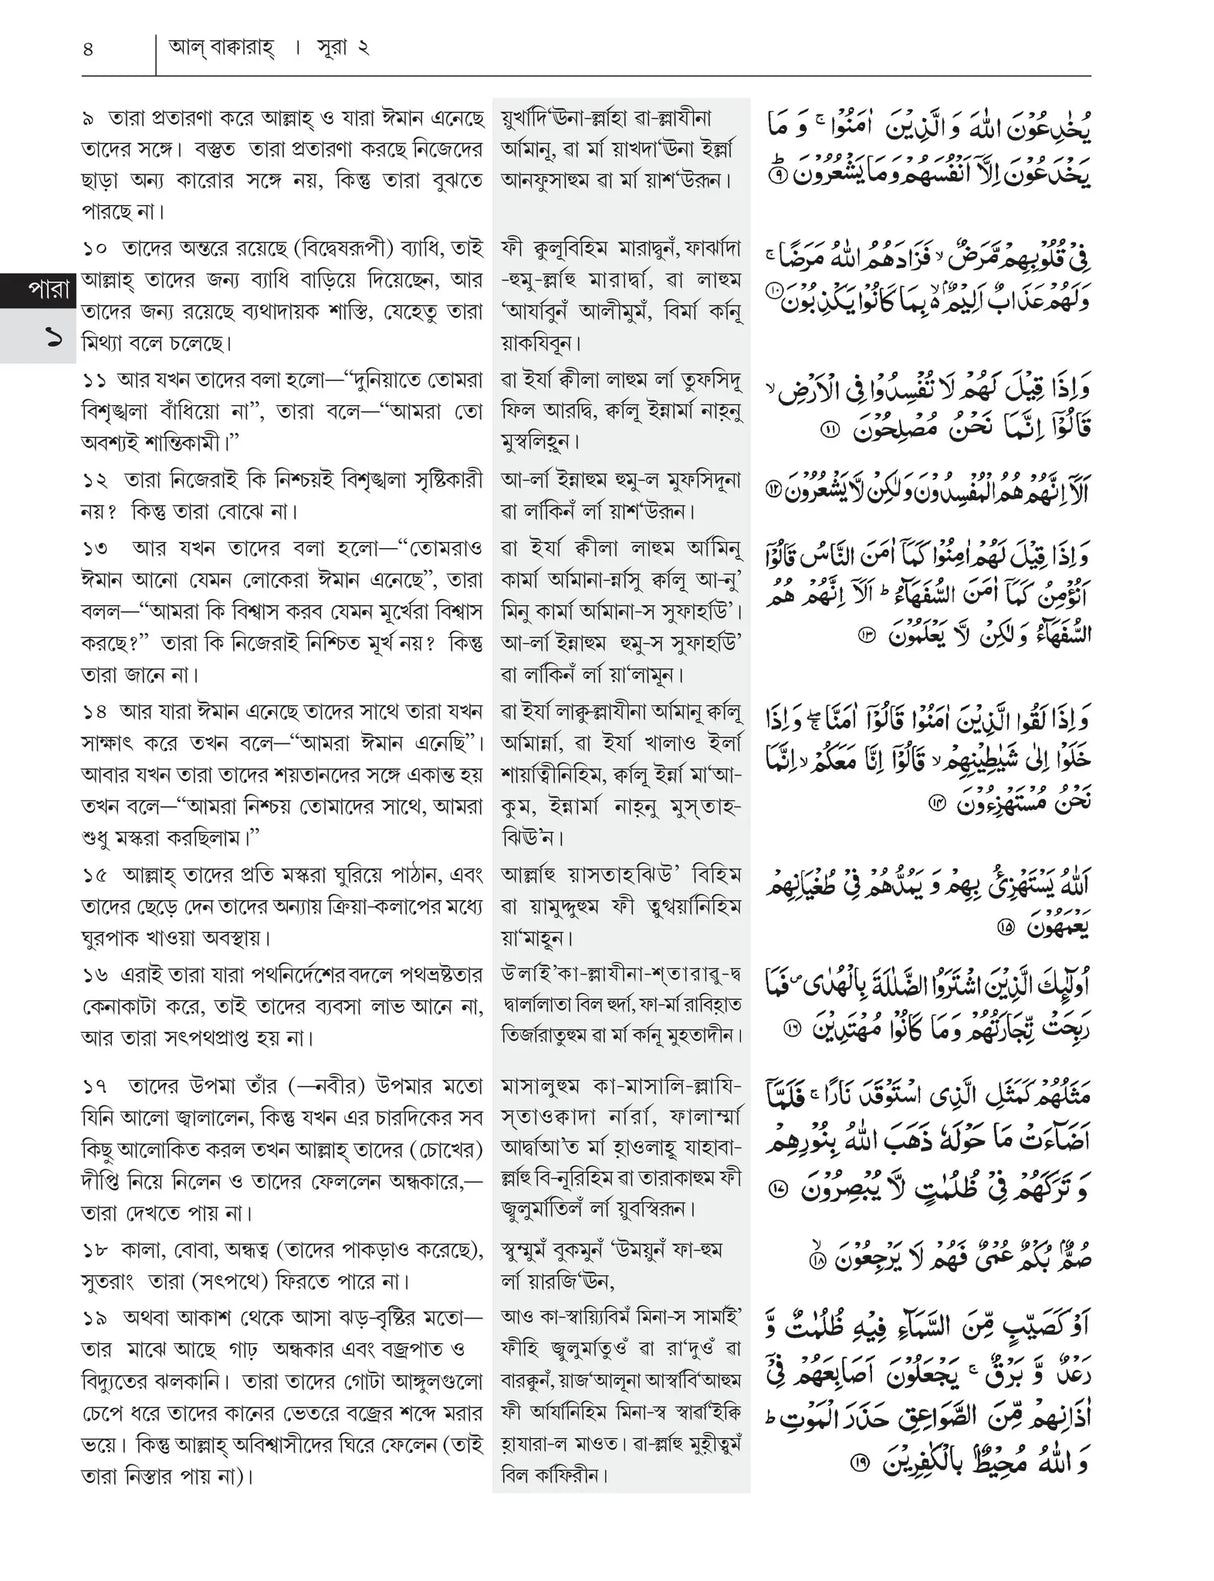 Bangla pronunciations of Al-Quran and Transliteration